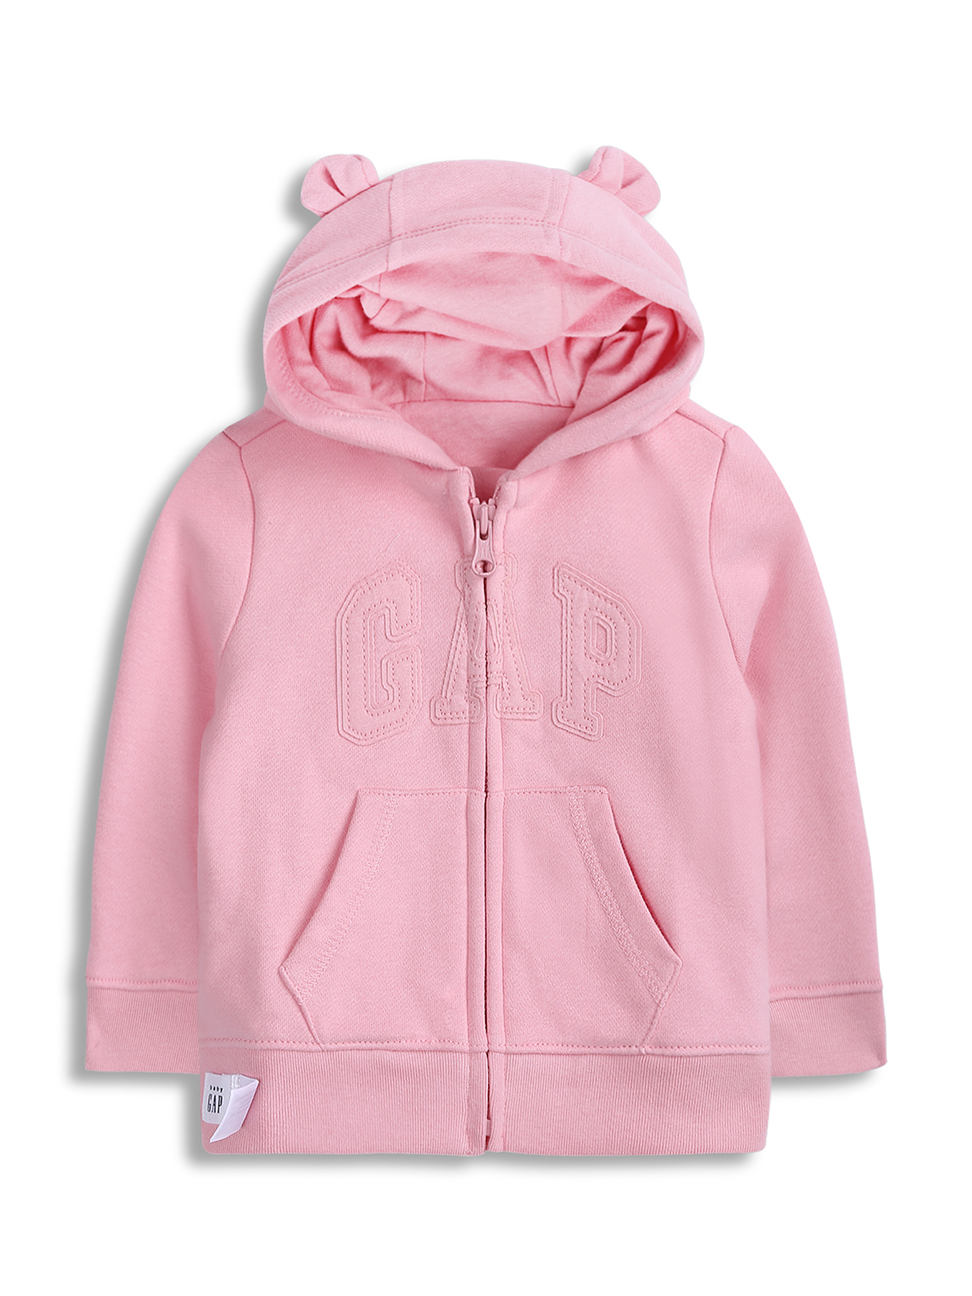 嬰兒裝|Logo甜美風素色熊耳造型連帽外套-經典粉紅色